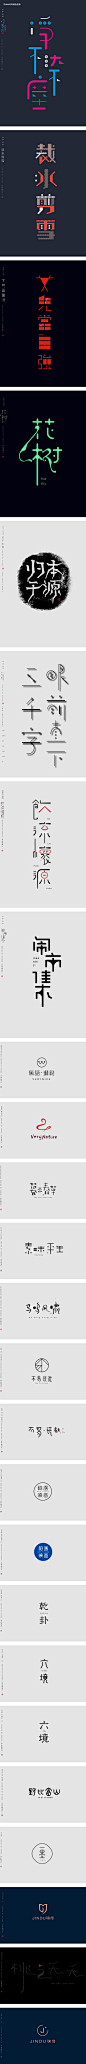 7月字体LOGO设计小集-字体传奇网-中国首个字体品牌设计师交流网,7月字体LOGO设计小集-字体传奇网-中国首个字体品牌设计师交流网